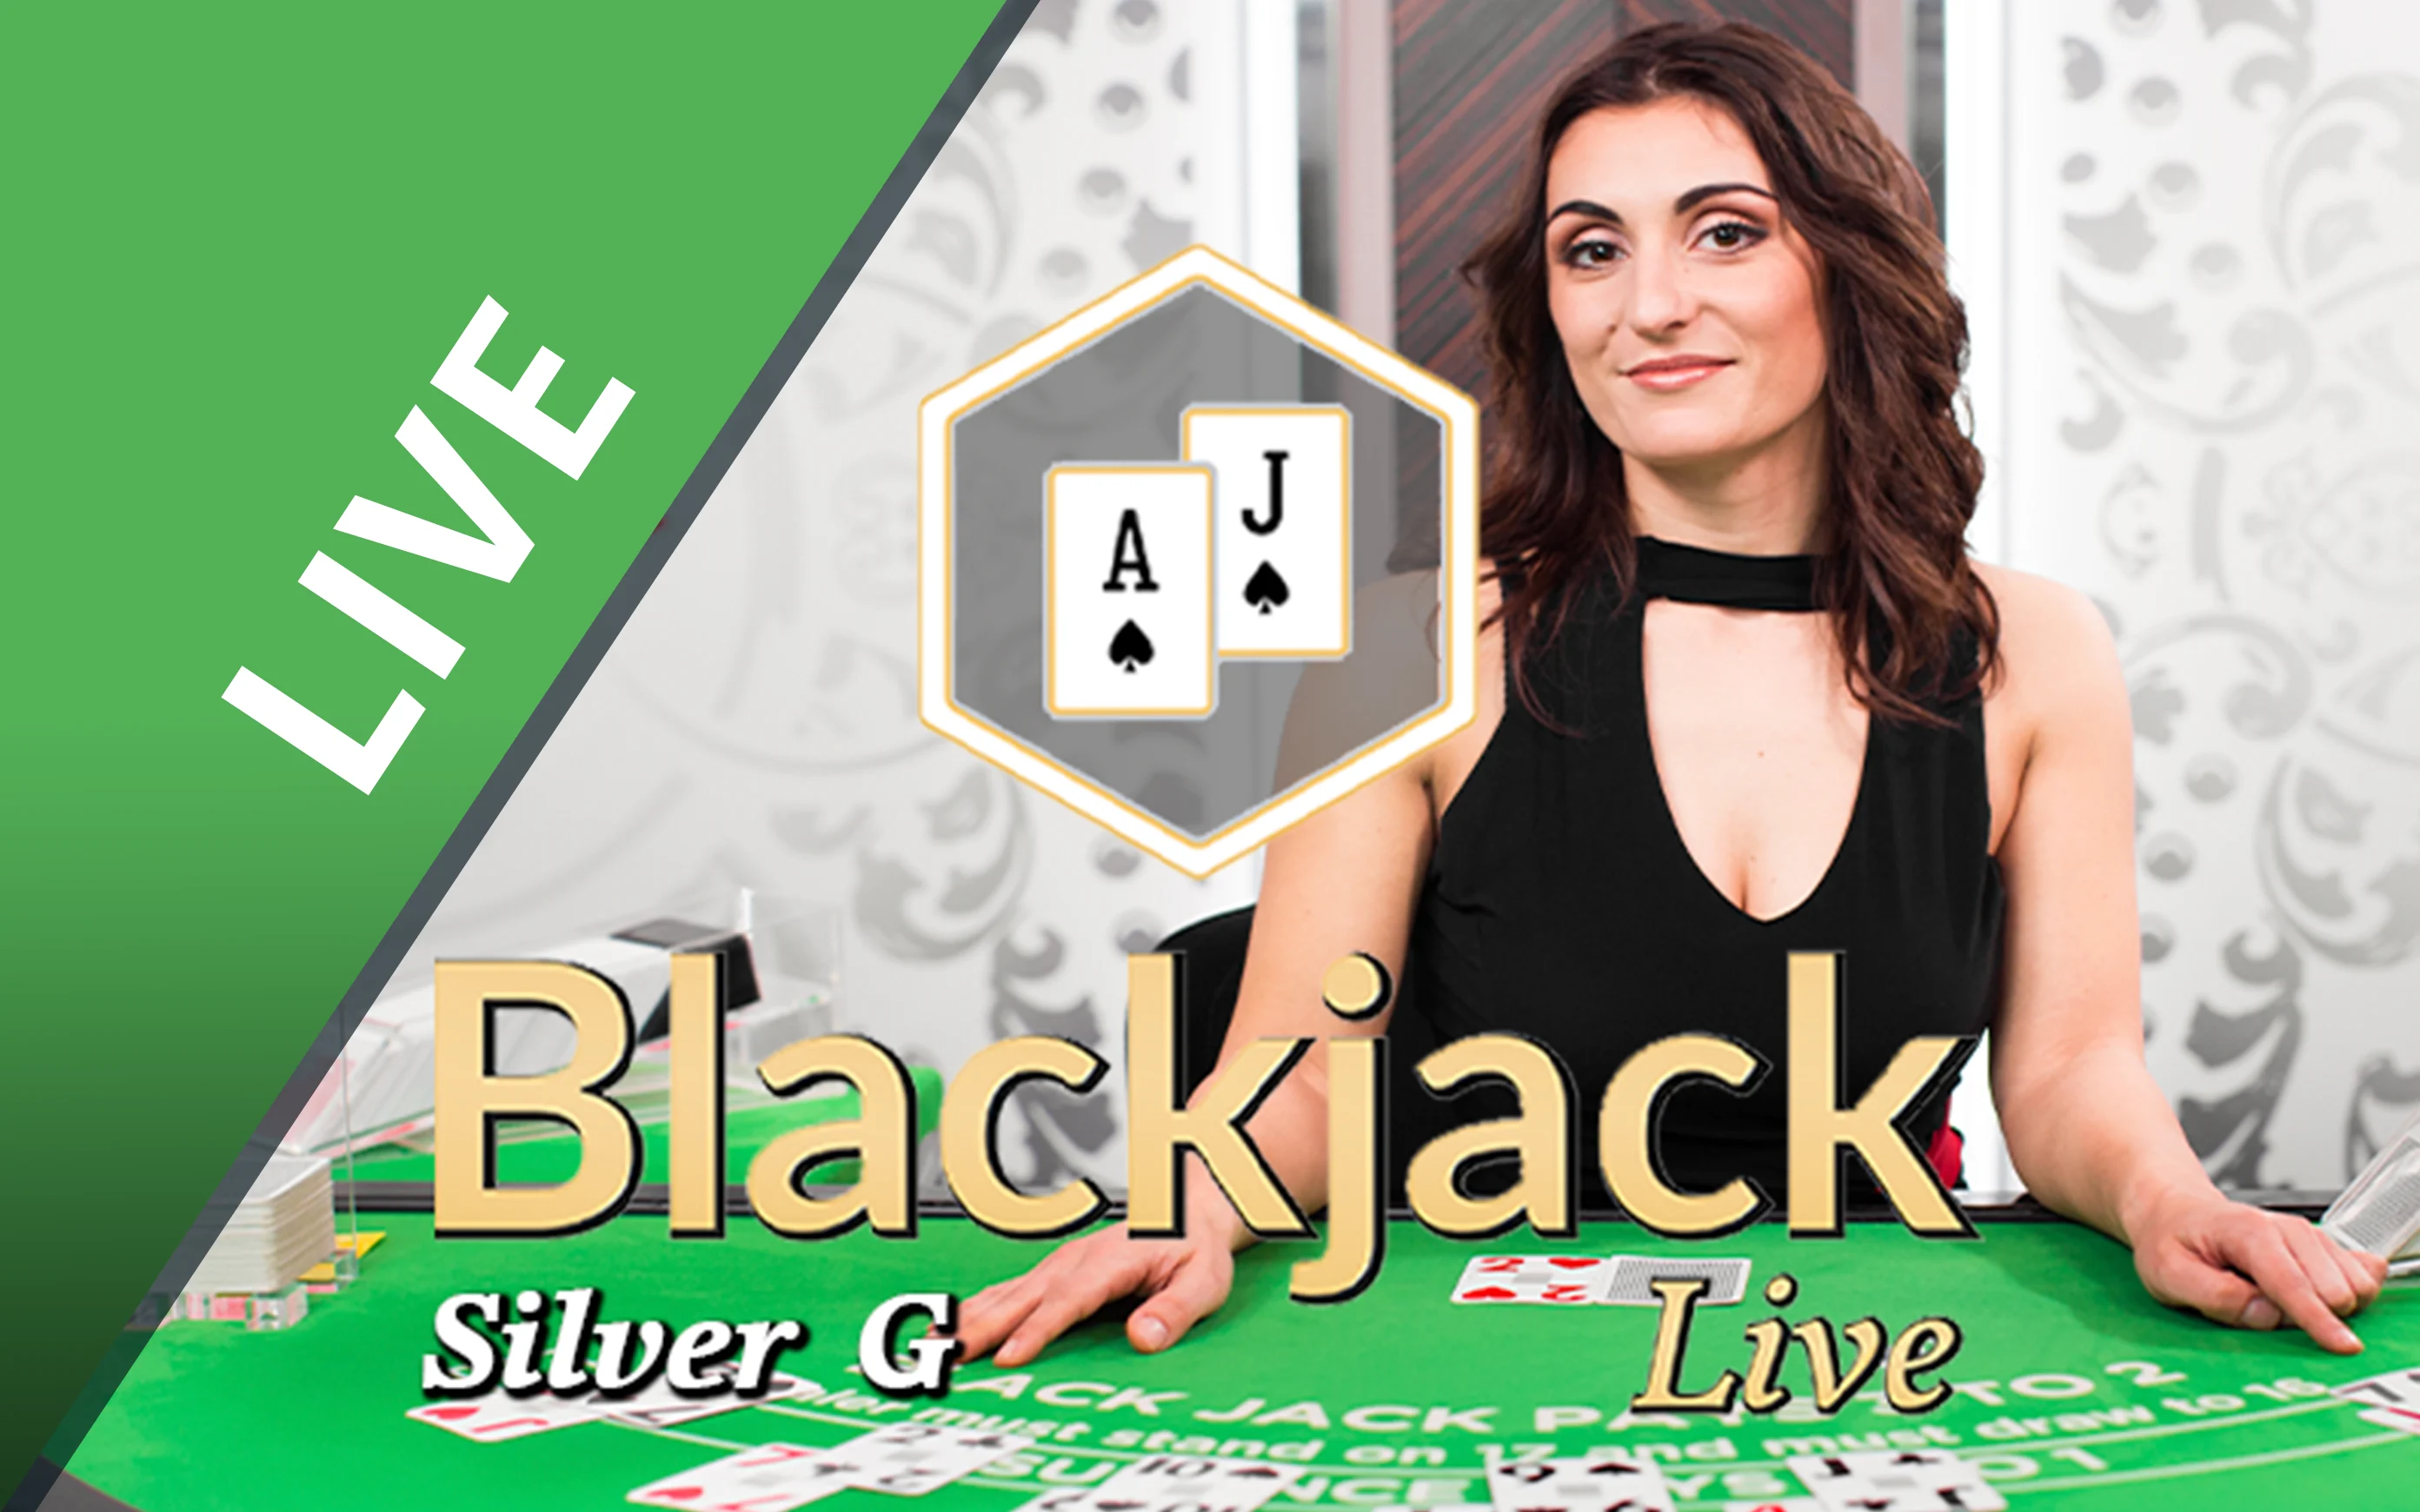 Грайте у Blackjack Silver G в онлайн-казино Starcasino.be